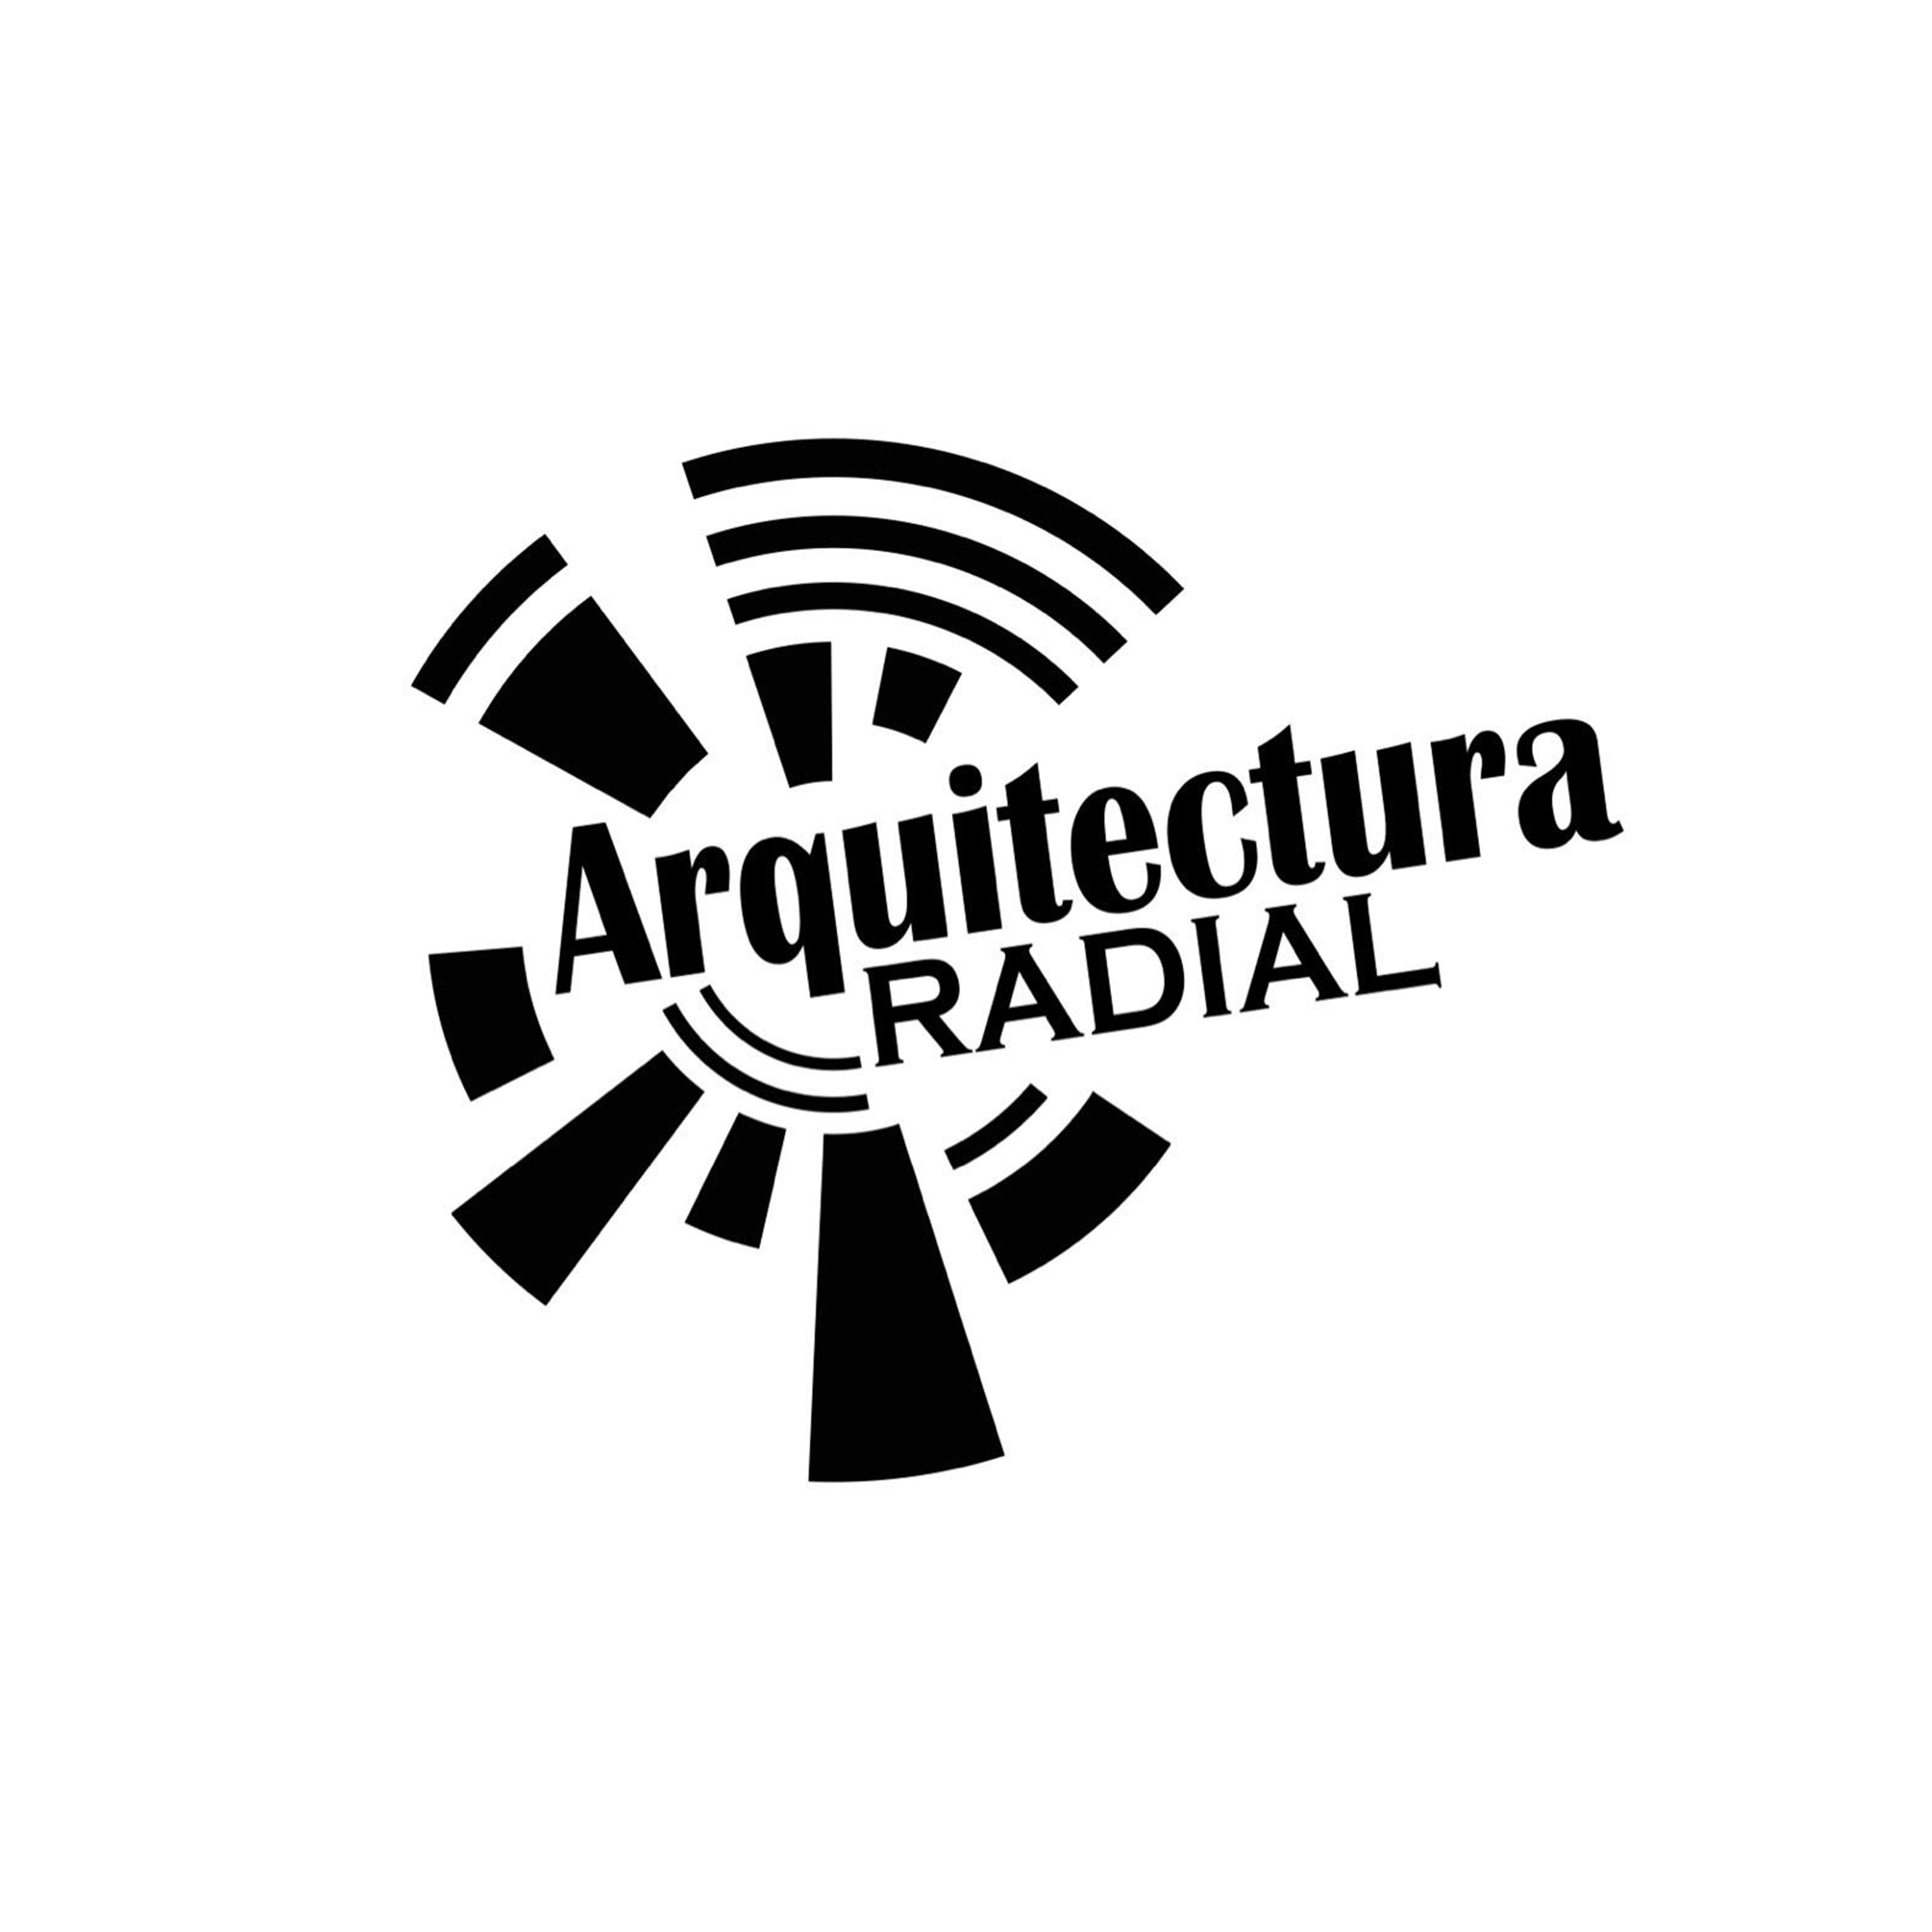 ARQUITECTURA RADIAL - DOMINGO ABRIL 18 2021